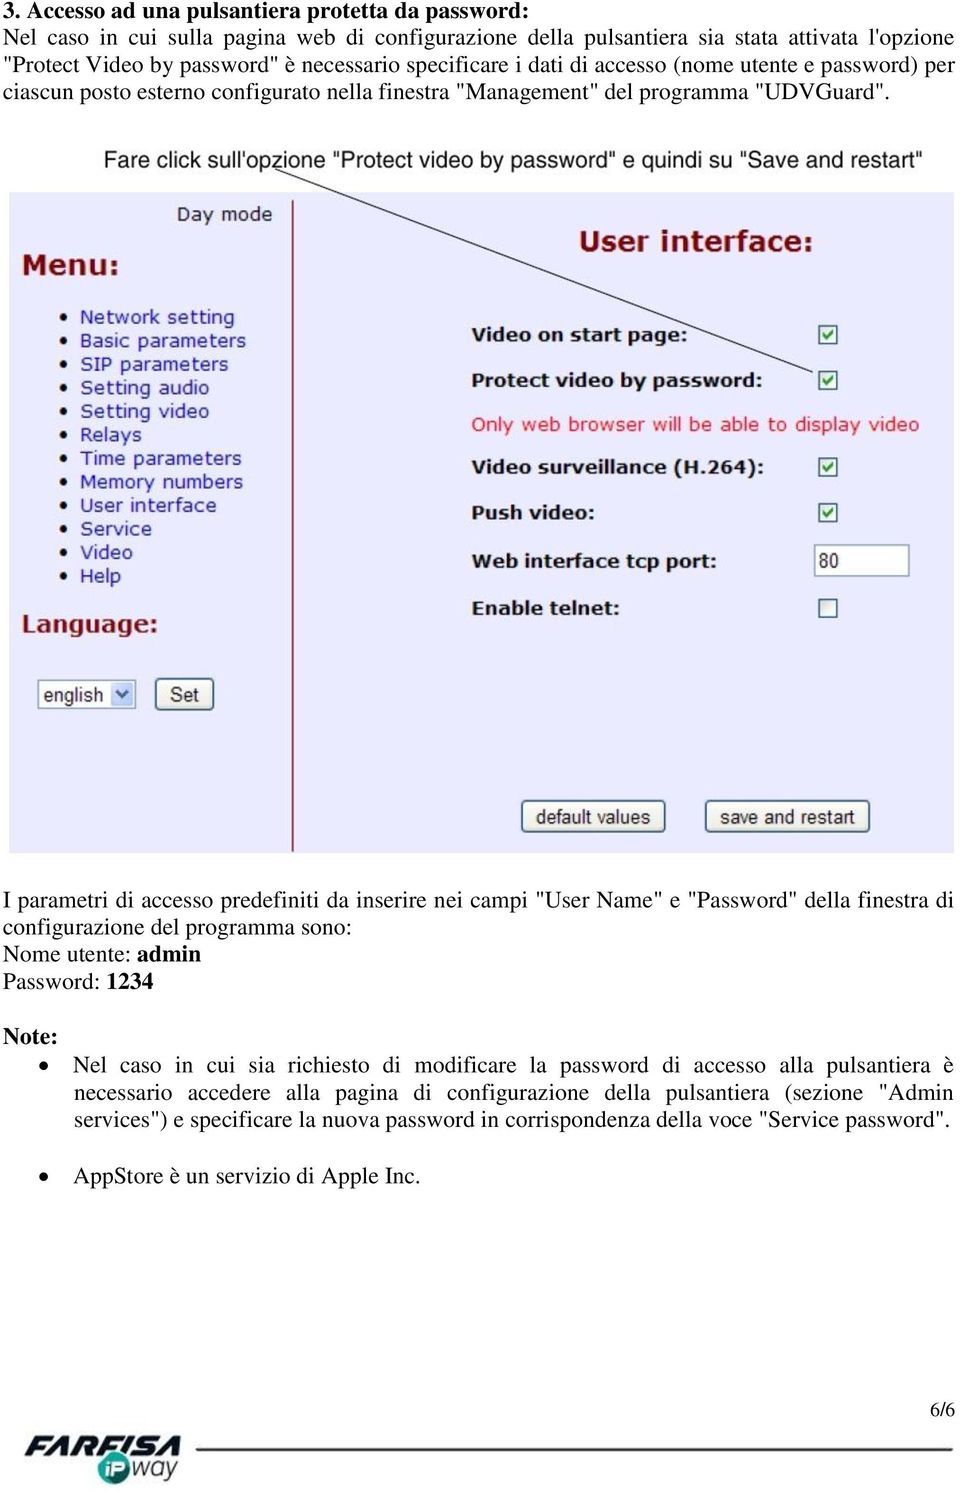 I parametri di accesso predefiniti da inserire nei campi "User Name" e "Password" della finestra di configurazione del programma sono: Nome utente: admin Password: 1234 Note: Nel caso in cui sia